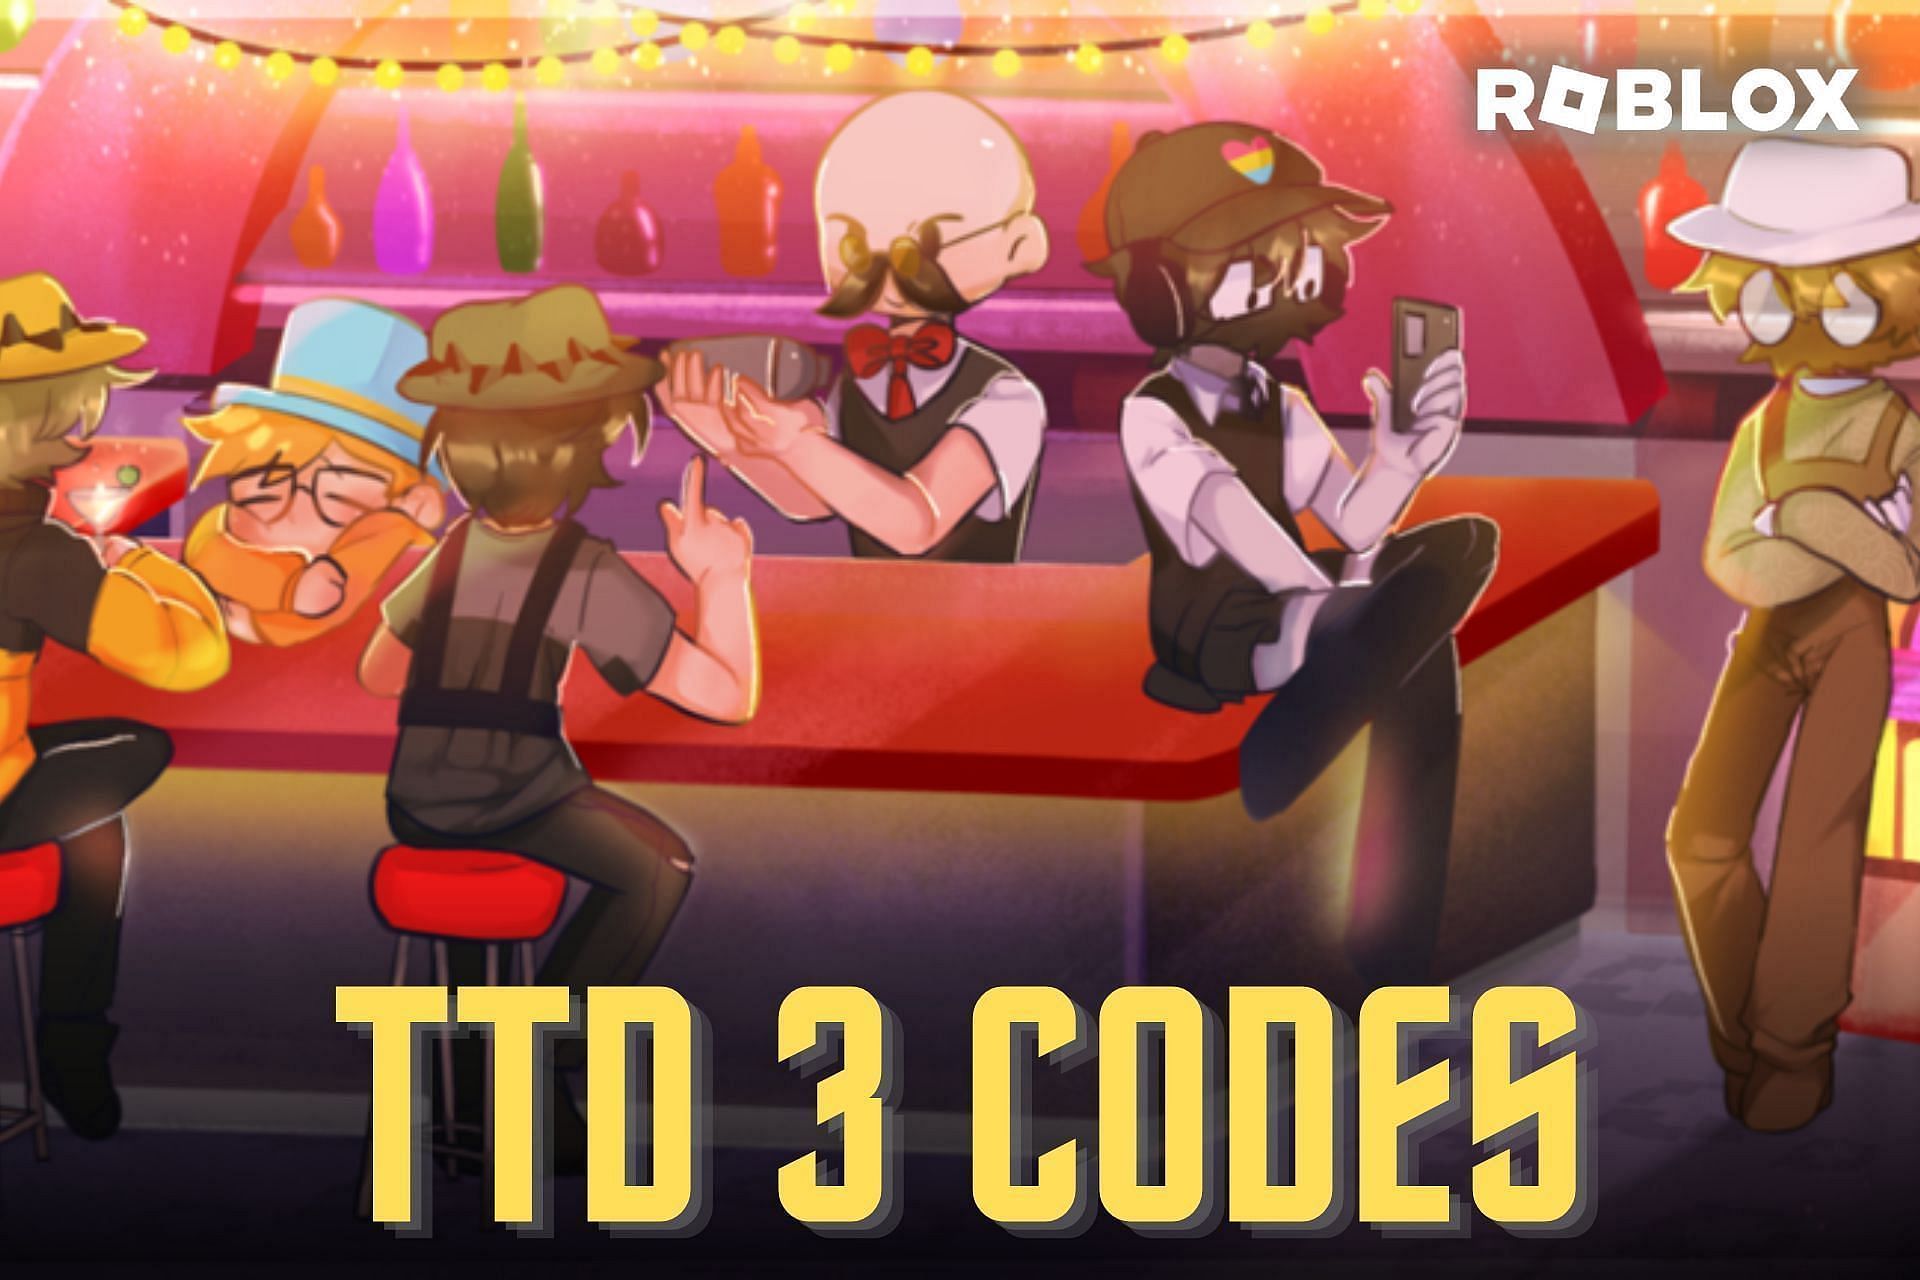 Featured image of TTD 3 codes (Image via Sportskeeda)